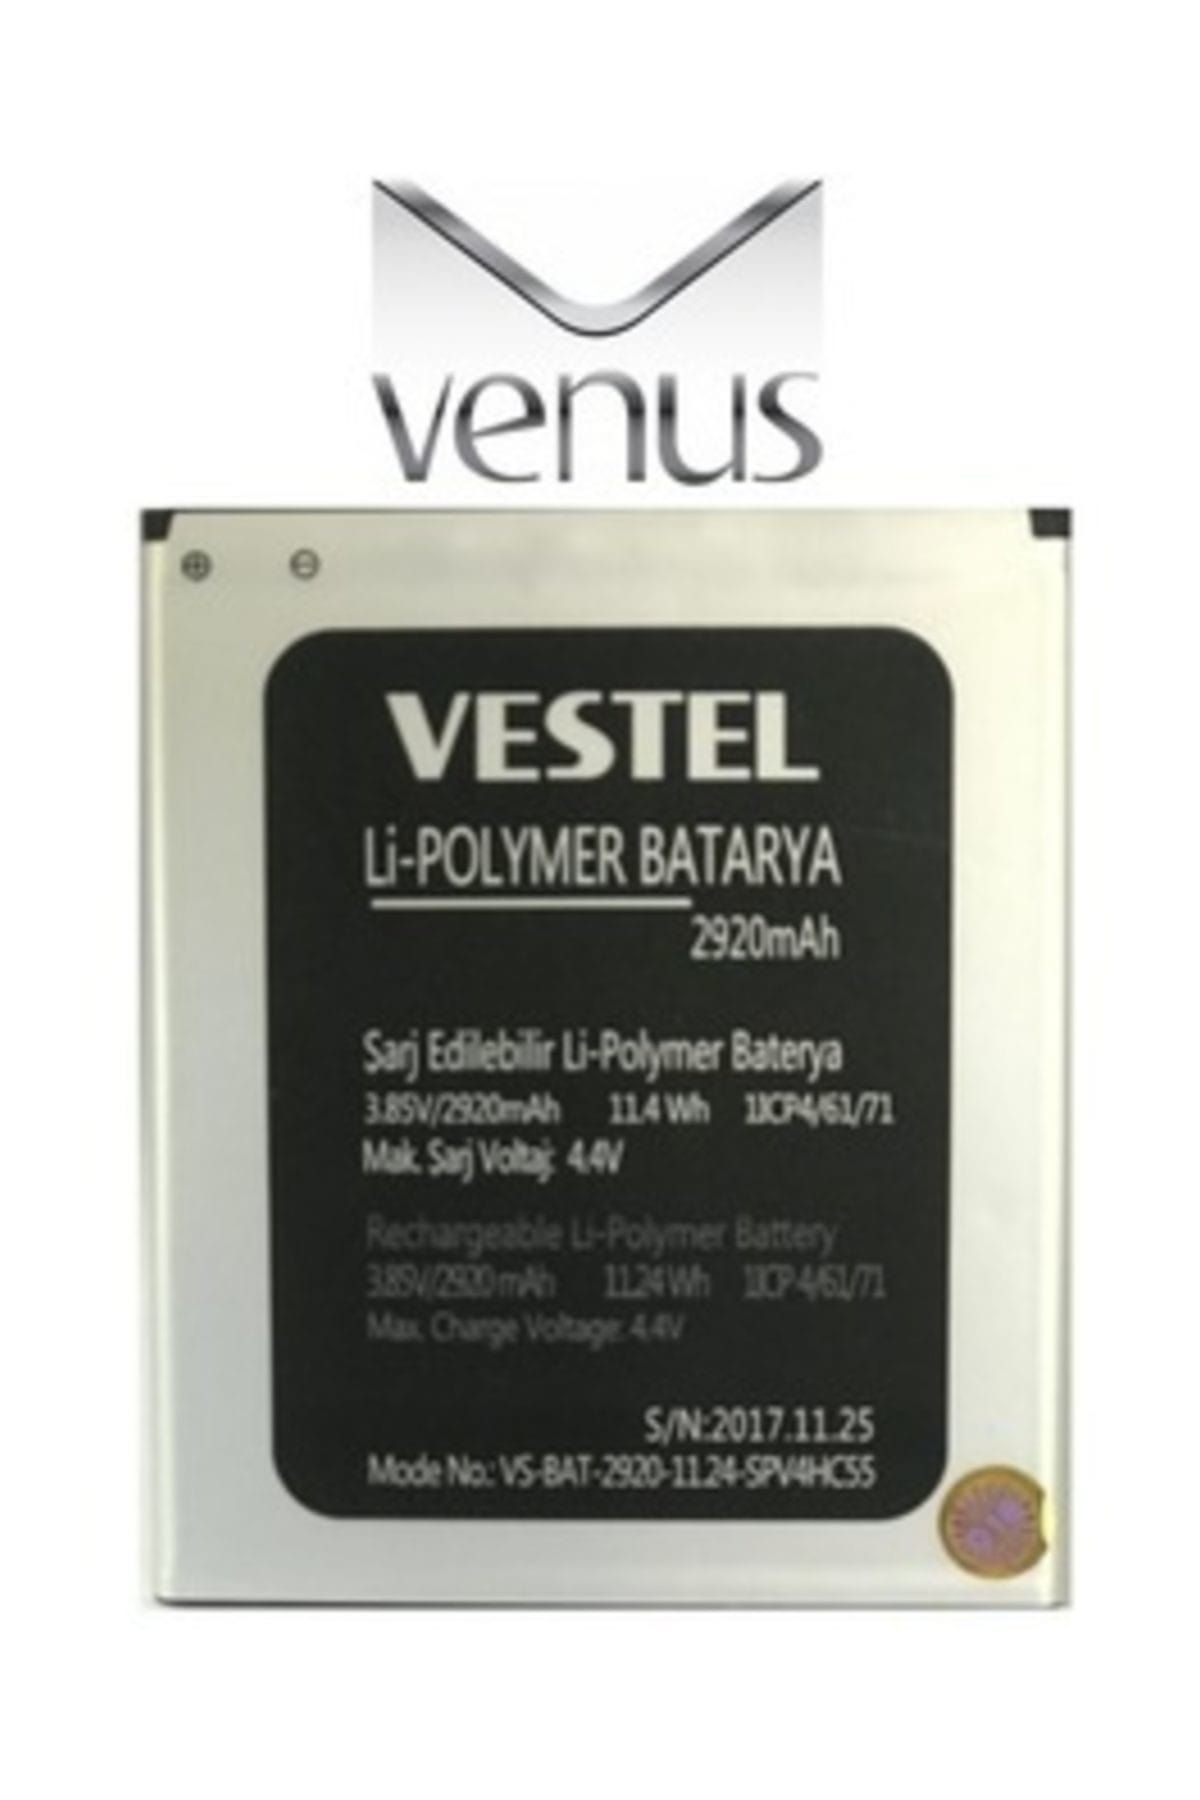 VESTEL Venüs V3 5530 Vs-bat-2920-11.24 Batarya Pil